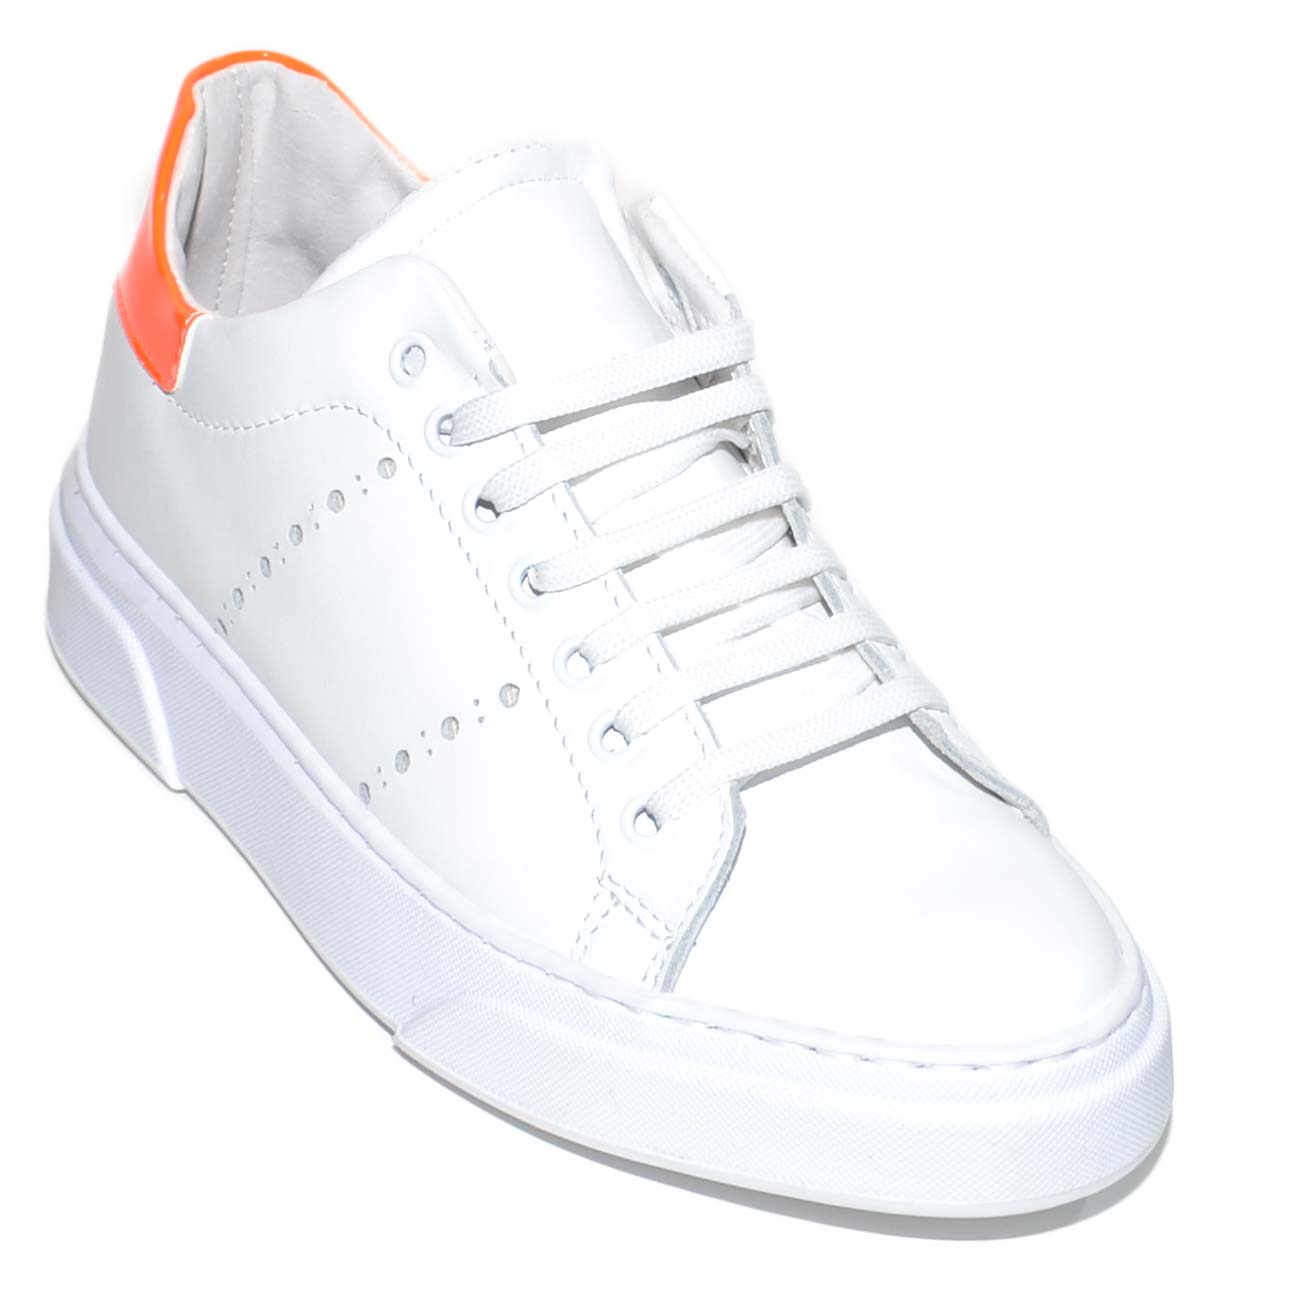 Sneakers bassa uomo bianca in vera pelle basic con fori buchi laterali e  riporto arancio fluo gomma under bianca moda uomo sneakers bassa made in  italy | MaluShoes